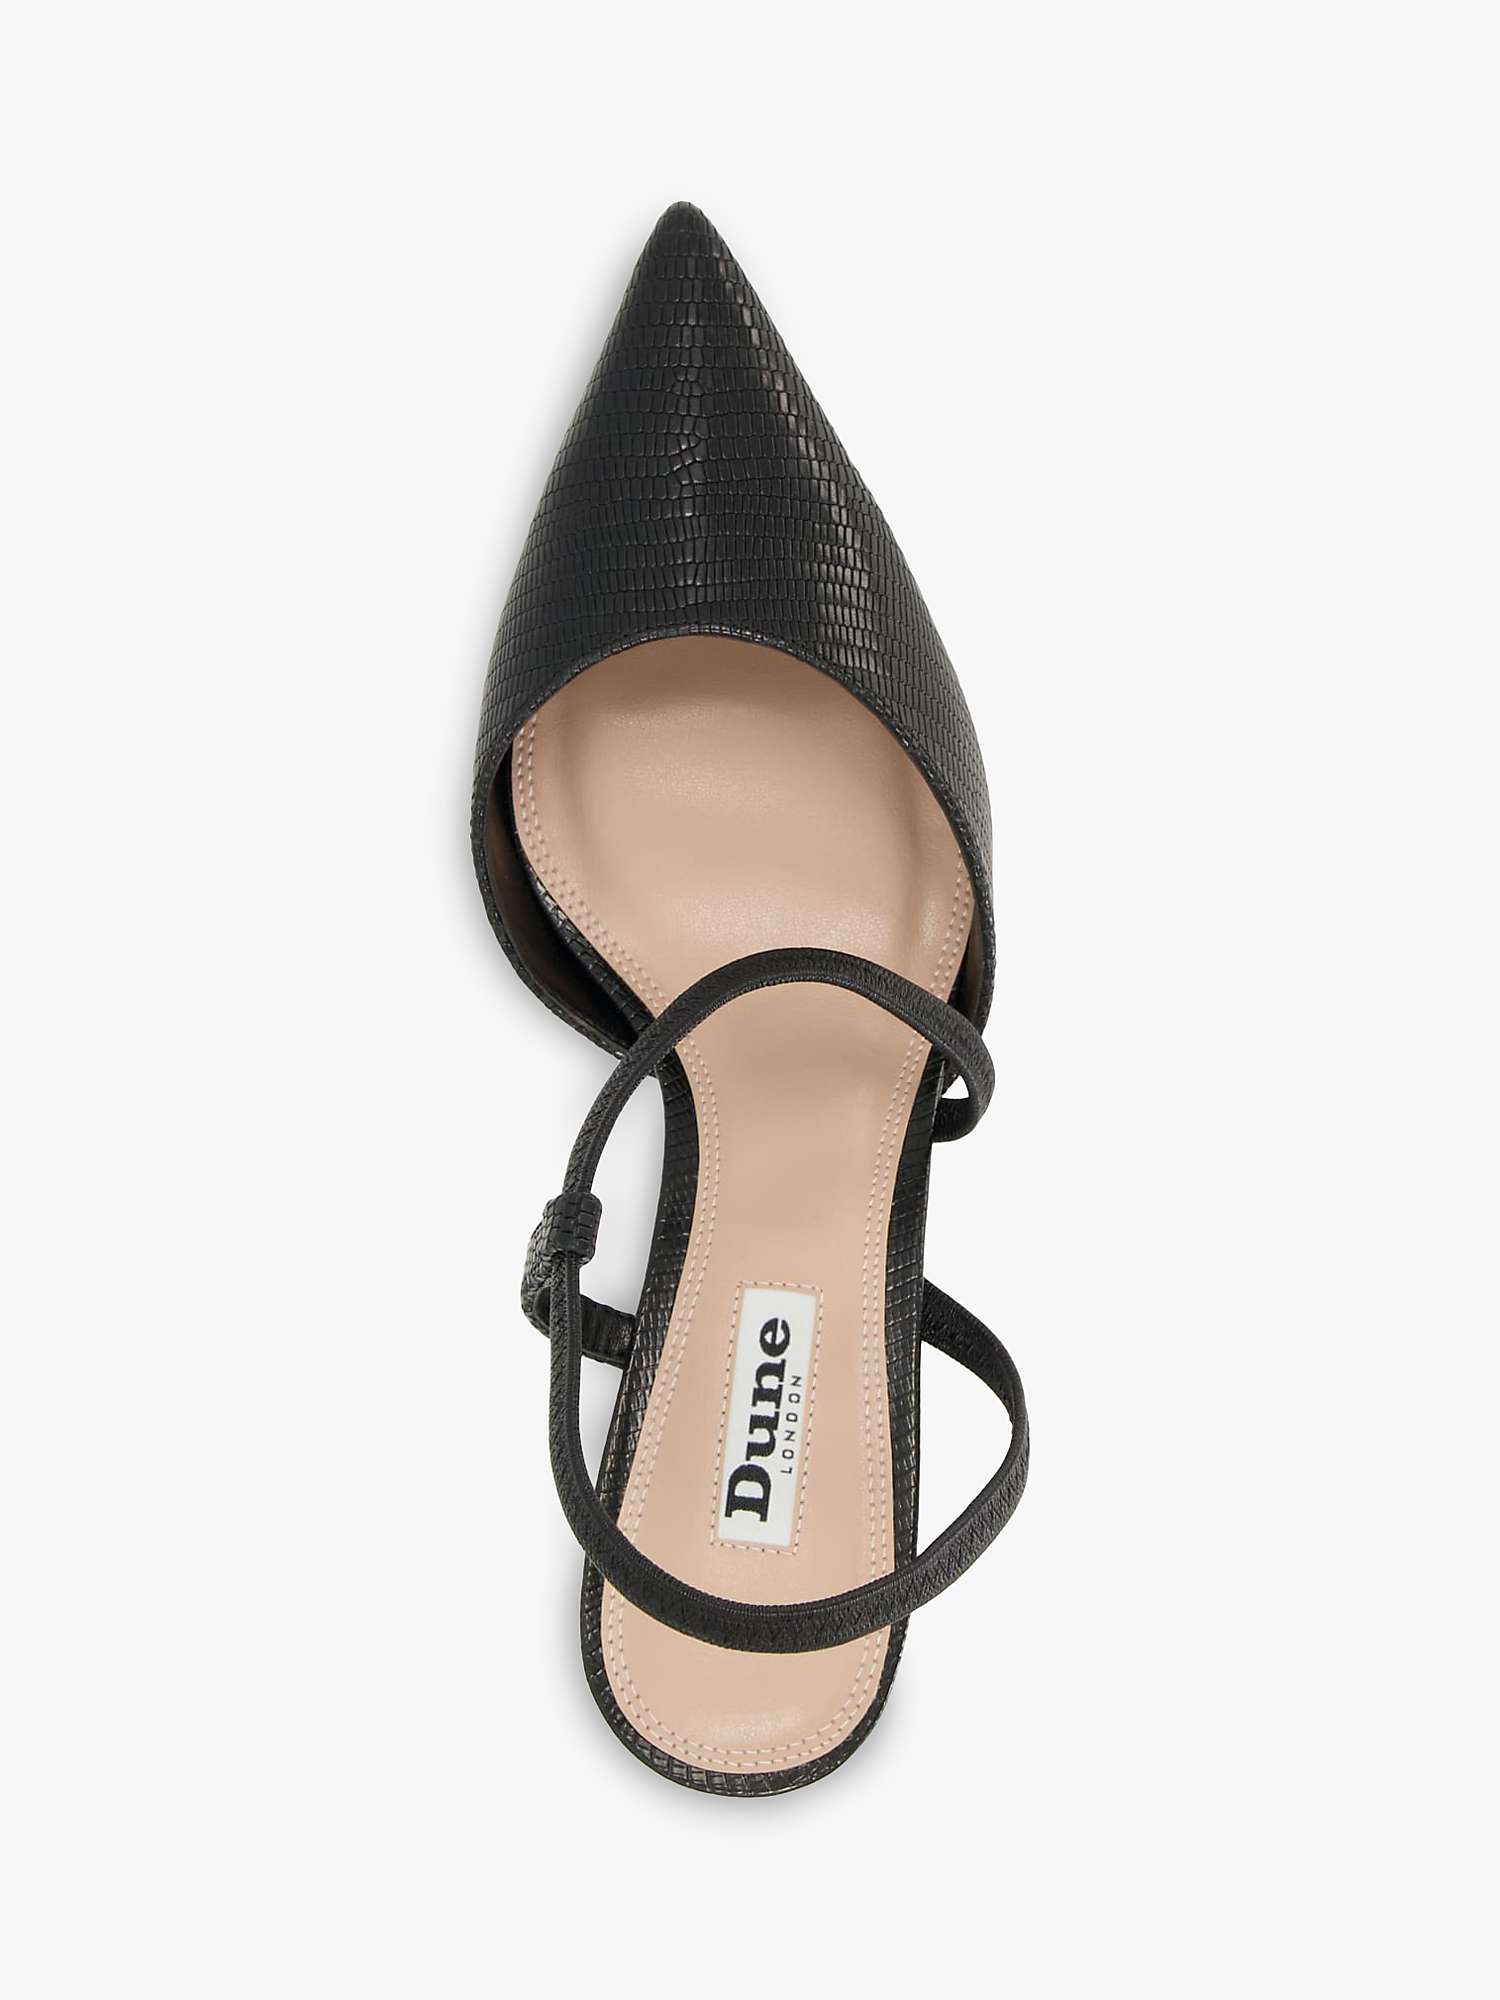 Buy Dune Citrus Leather Asymmetric Court Shoes, Black Online at johnlewis.com